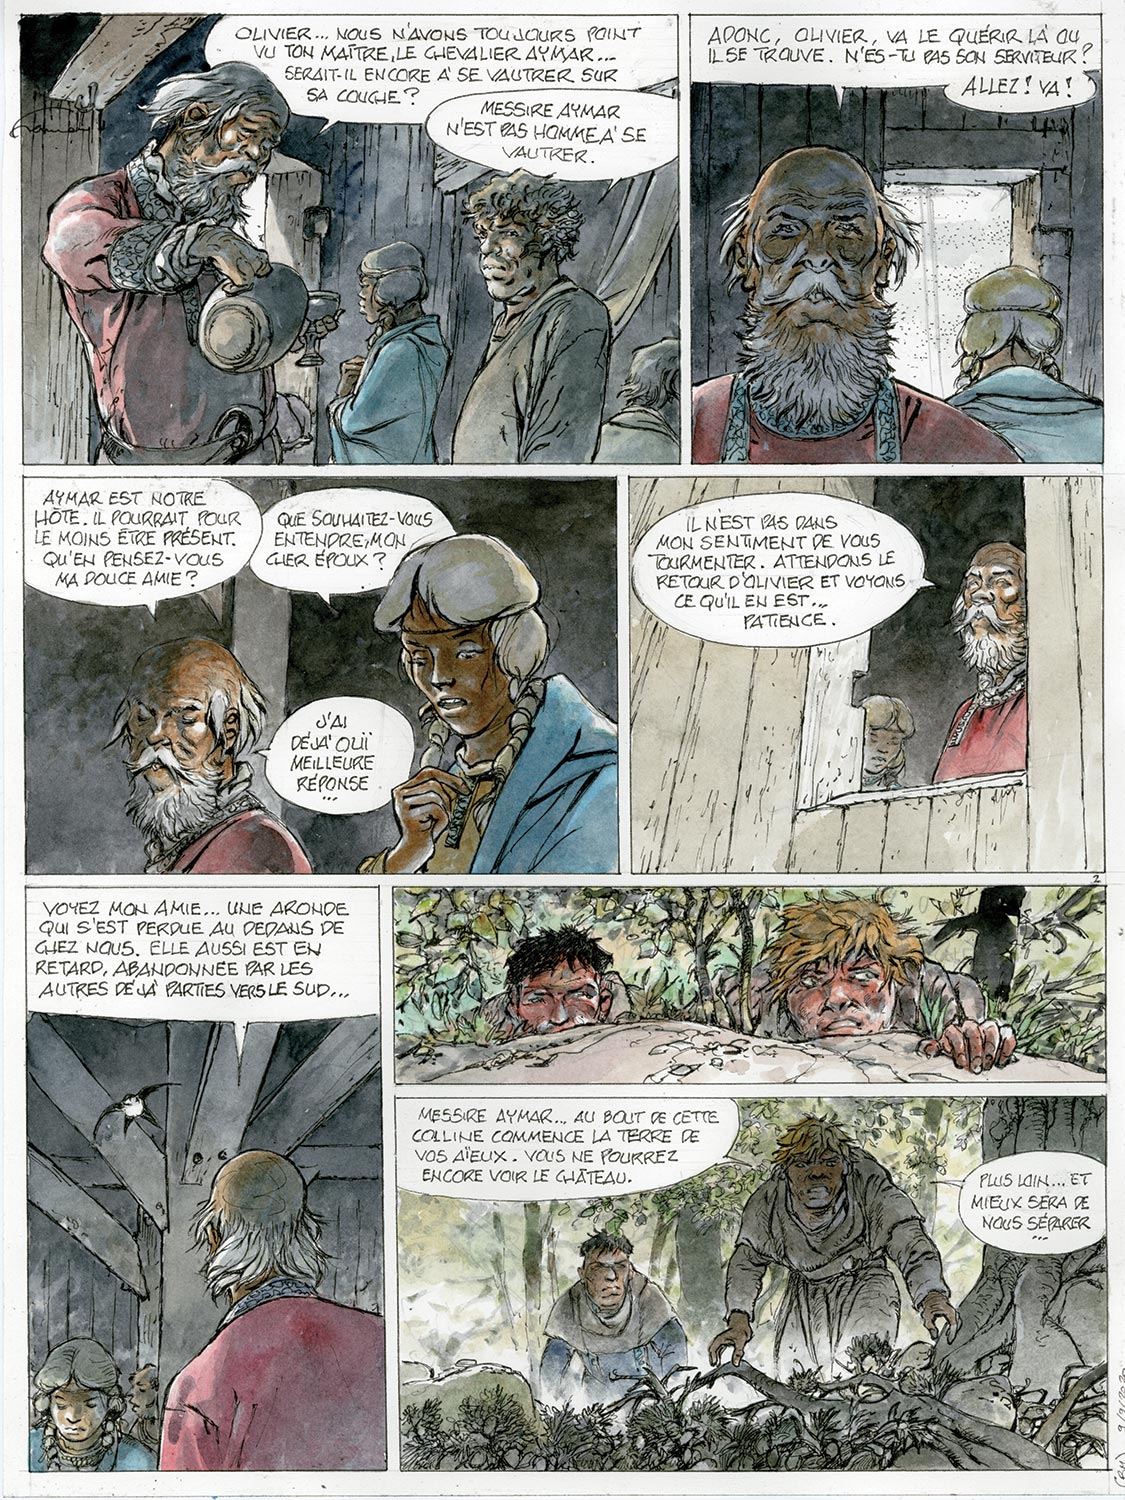 L'homme à la hache, Bois Maury, page 2